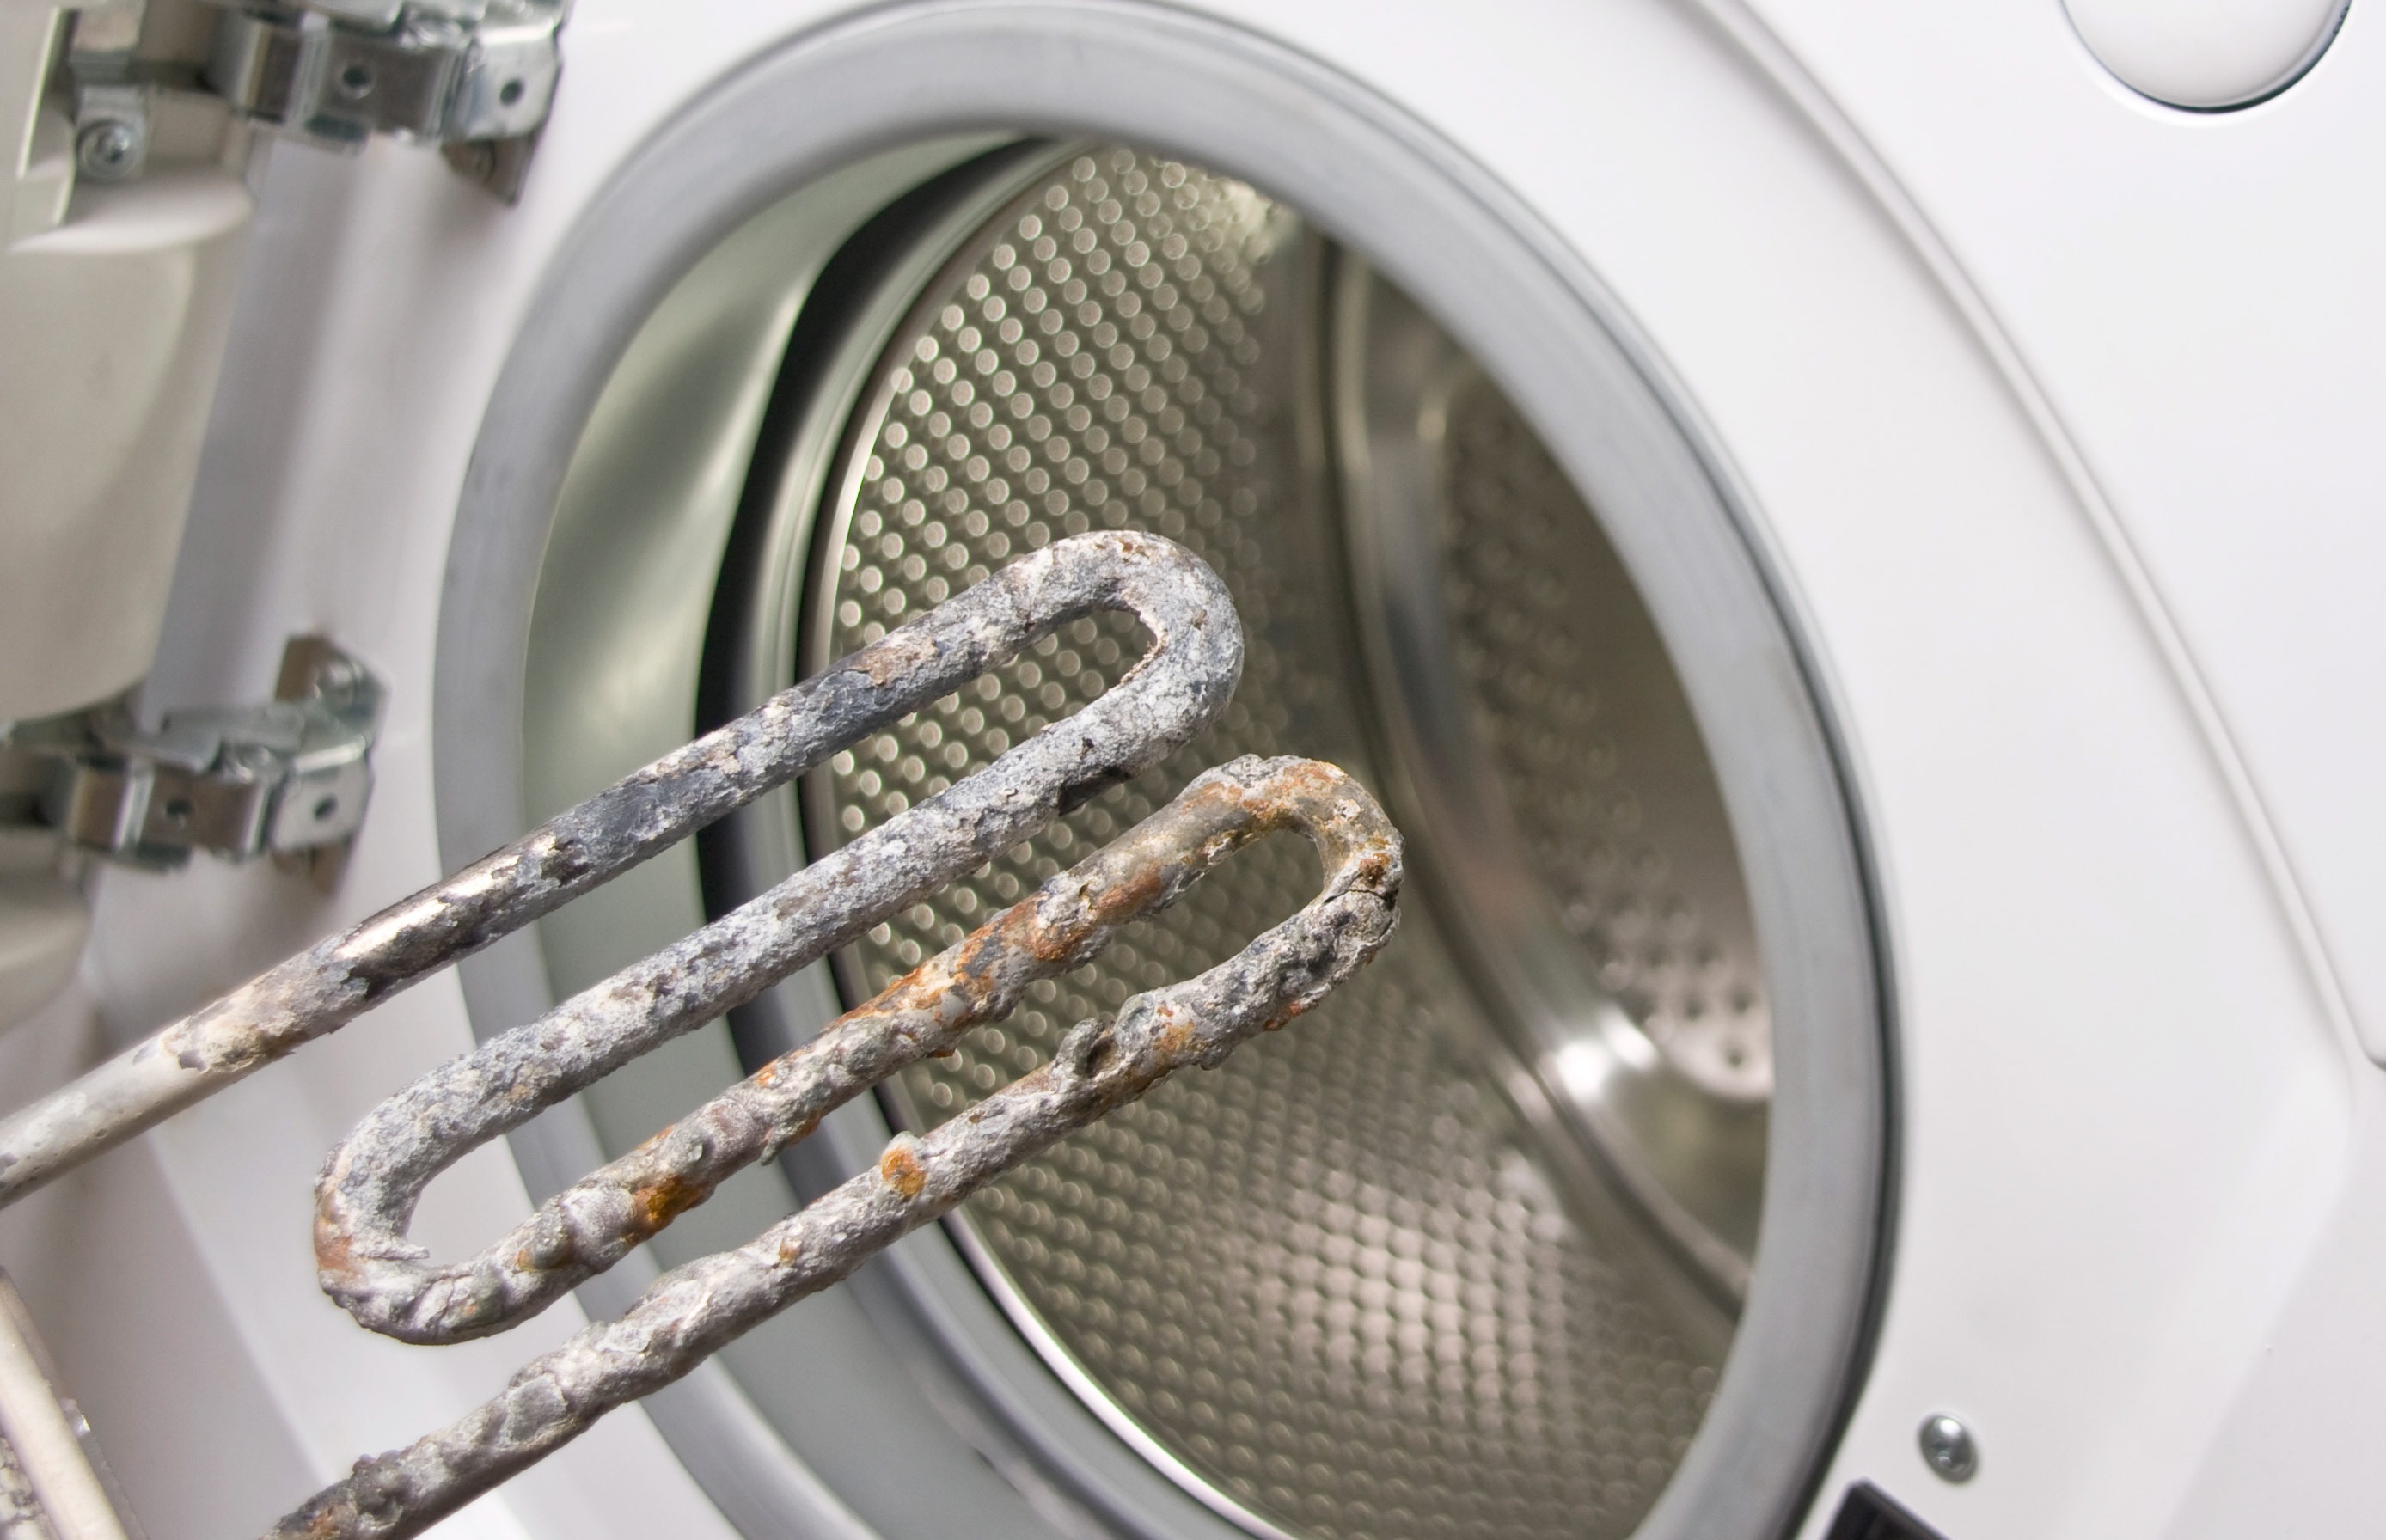 Elementul de încălzire se arde adesea la mașinile de spălat și uscat